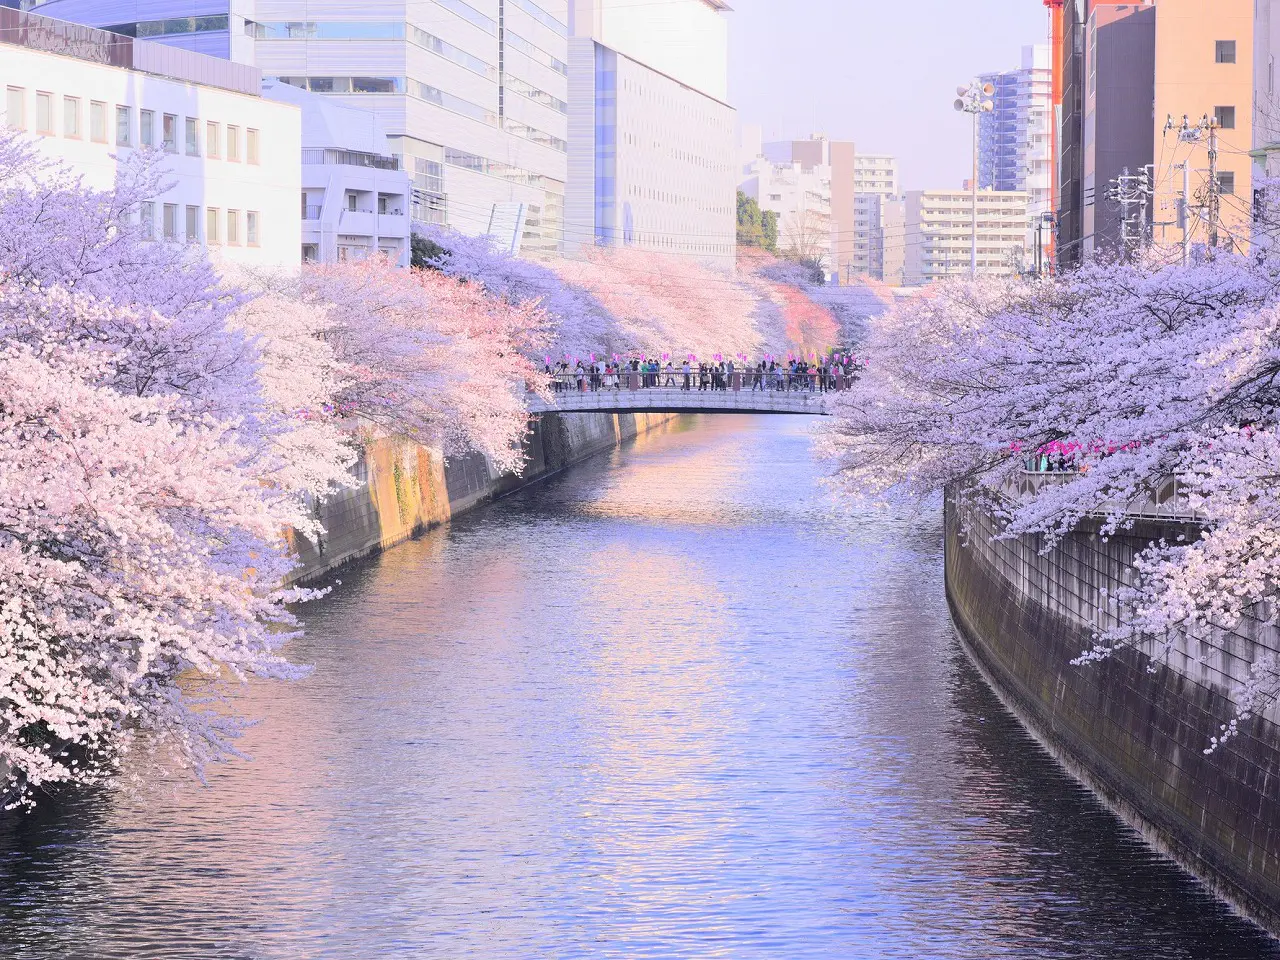 &nbsp;Sông Meguro, Tokyo có những hàng cây anh đào trải dọc bờ sông, thu hút rất nhiều du khách tới trong mùa hoa nở. Vào những ngày gió mạnh, hoa anh đào sẽ rụng đầy dưới sông, tạo nên khung cảnh rất đẹp.